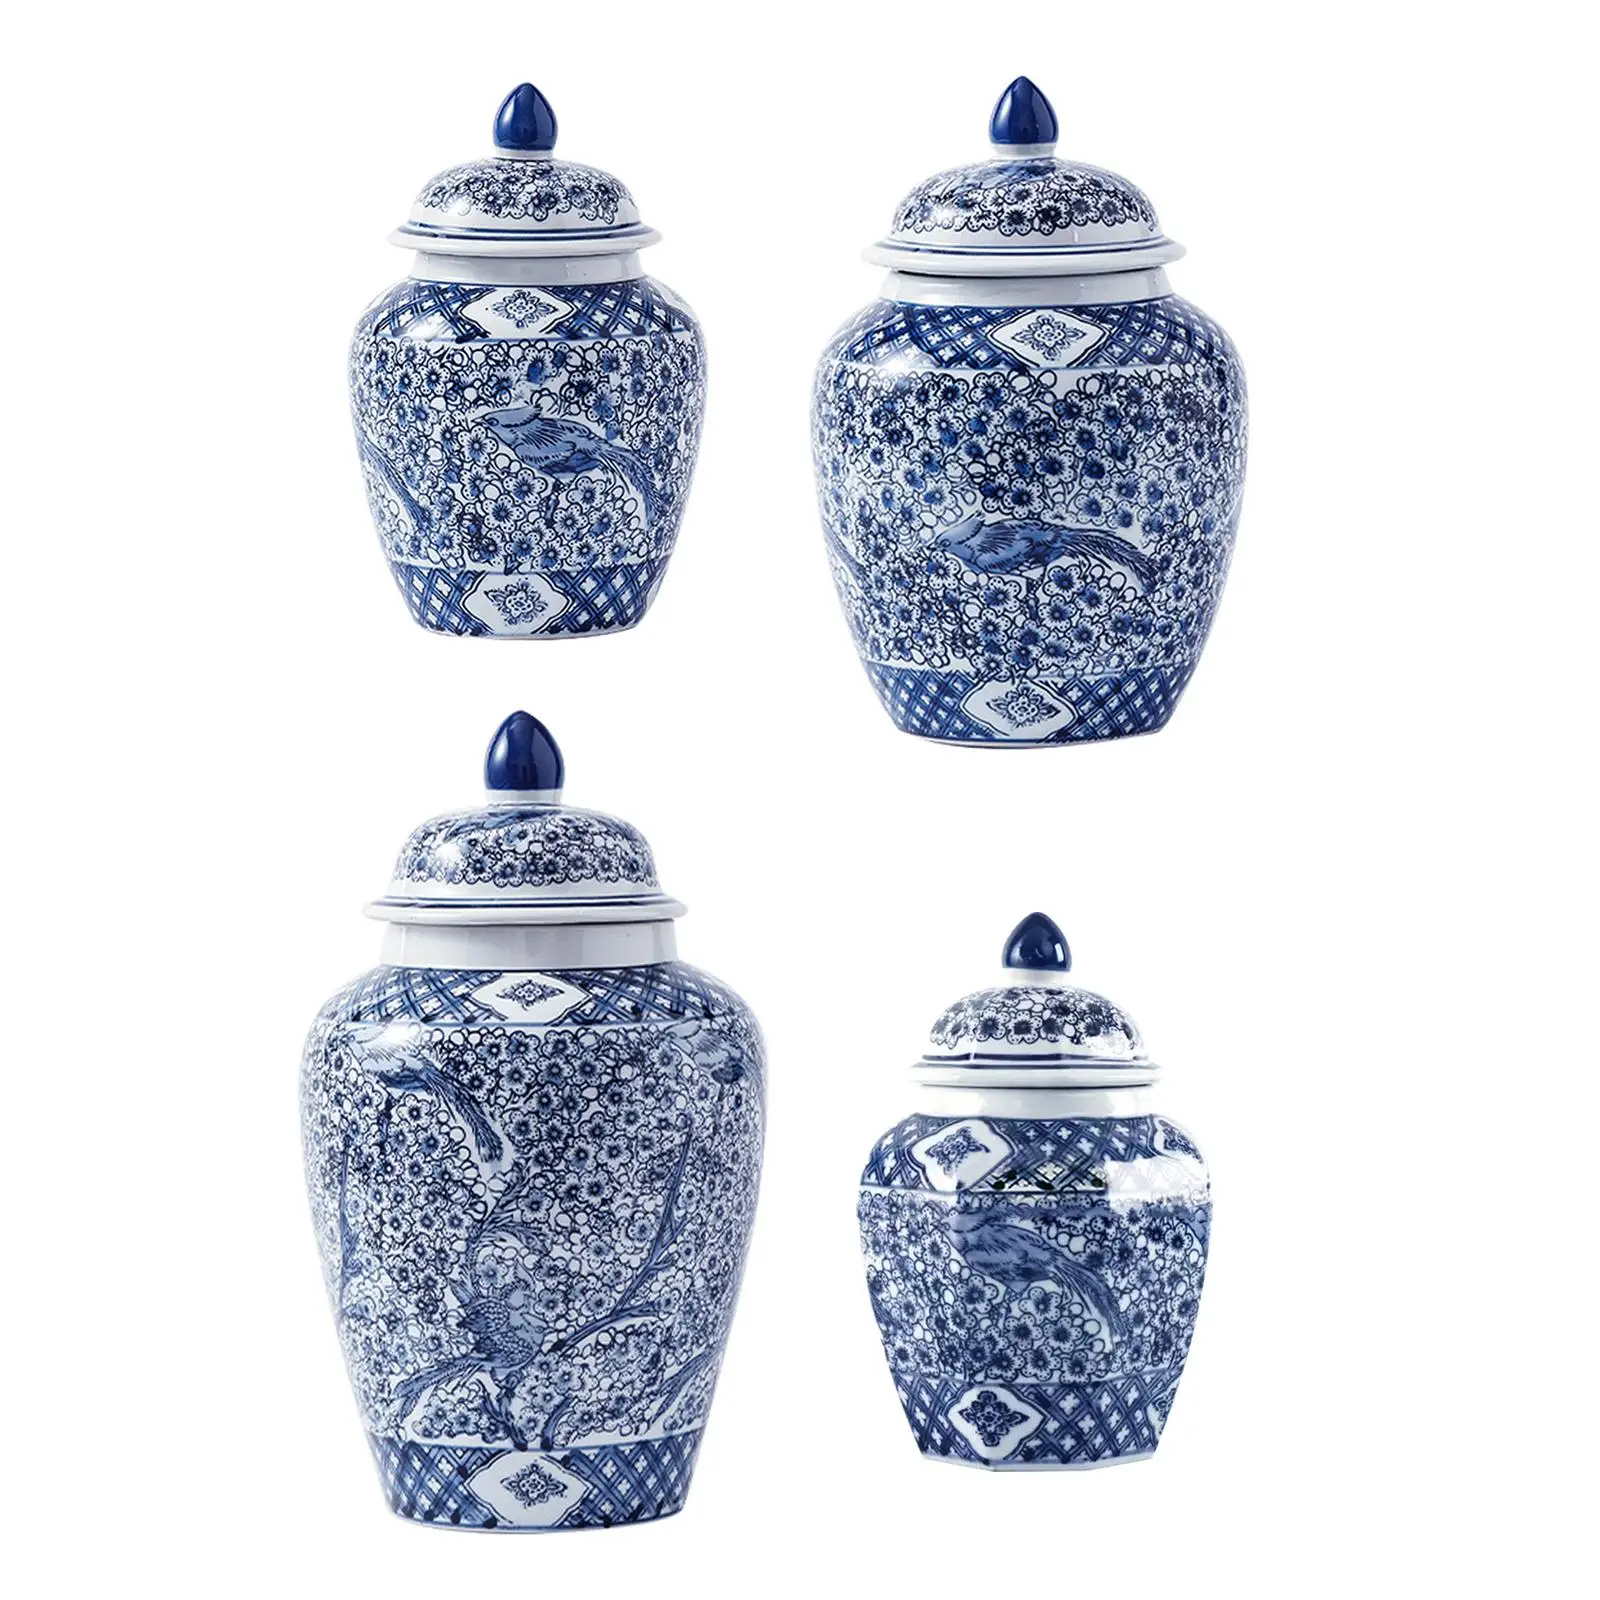 Ceramic Ginger Jar Storage Jar Traditional Plants Holder for Home Decoration